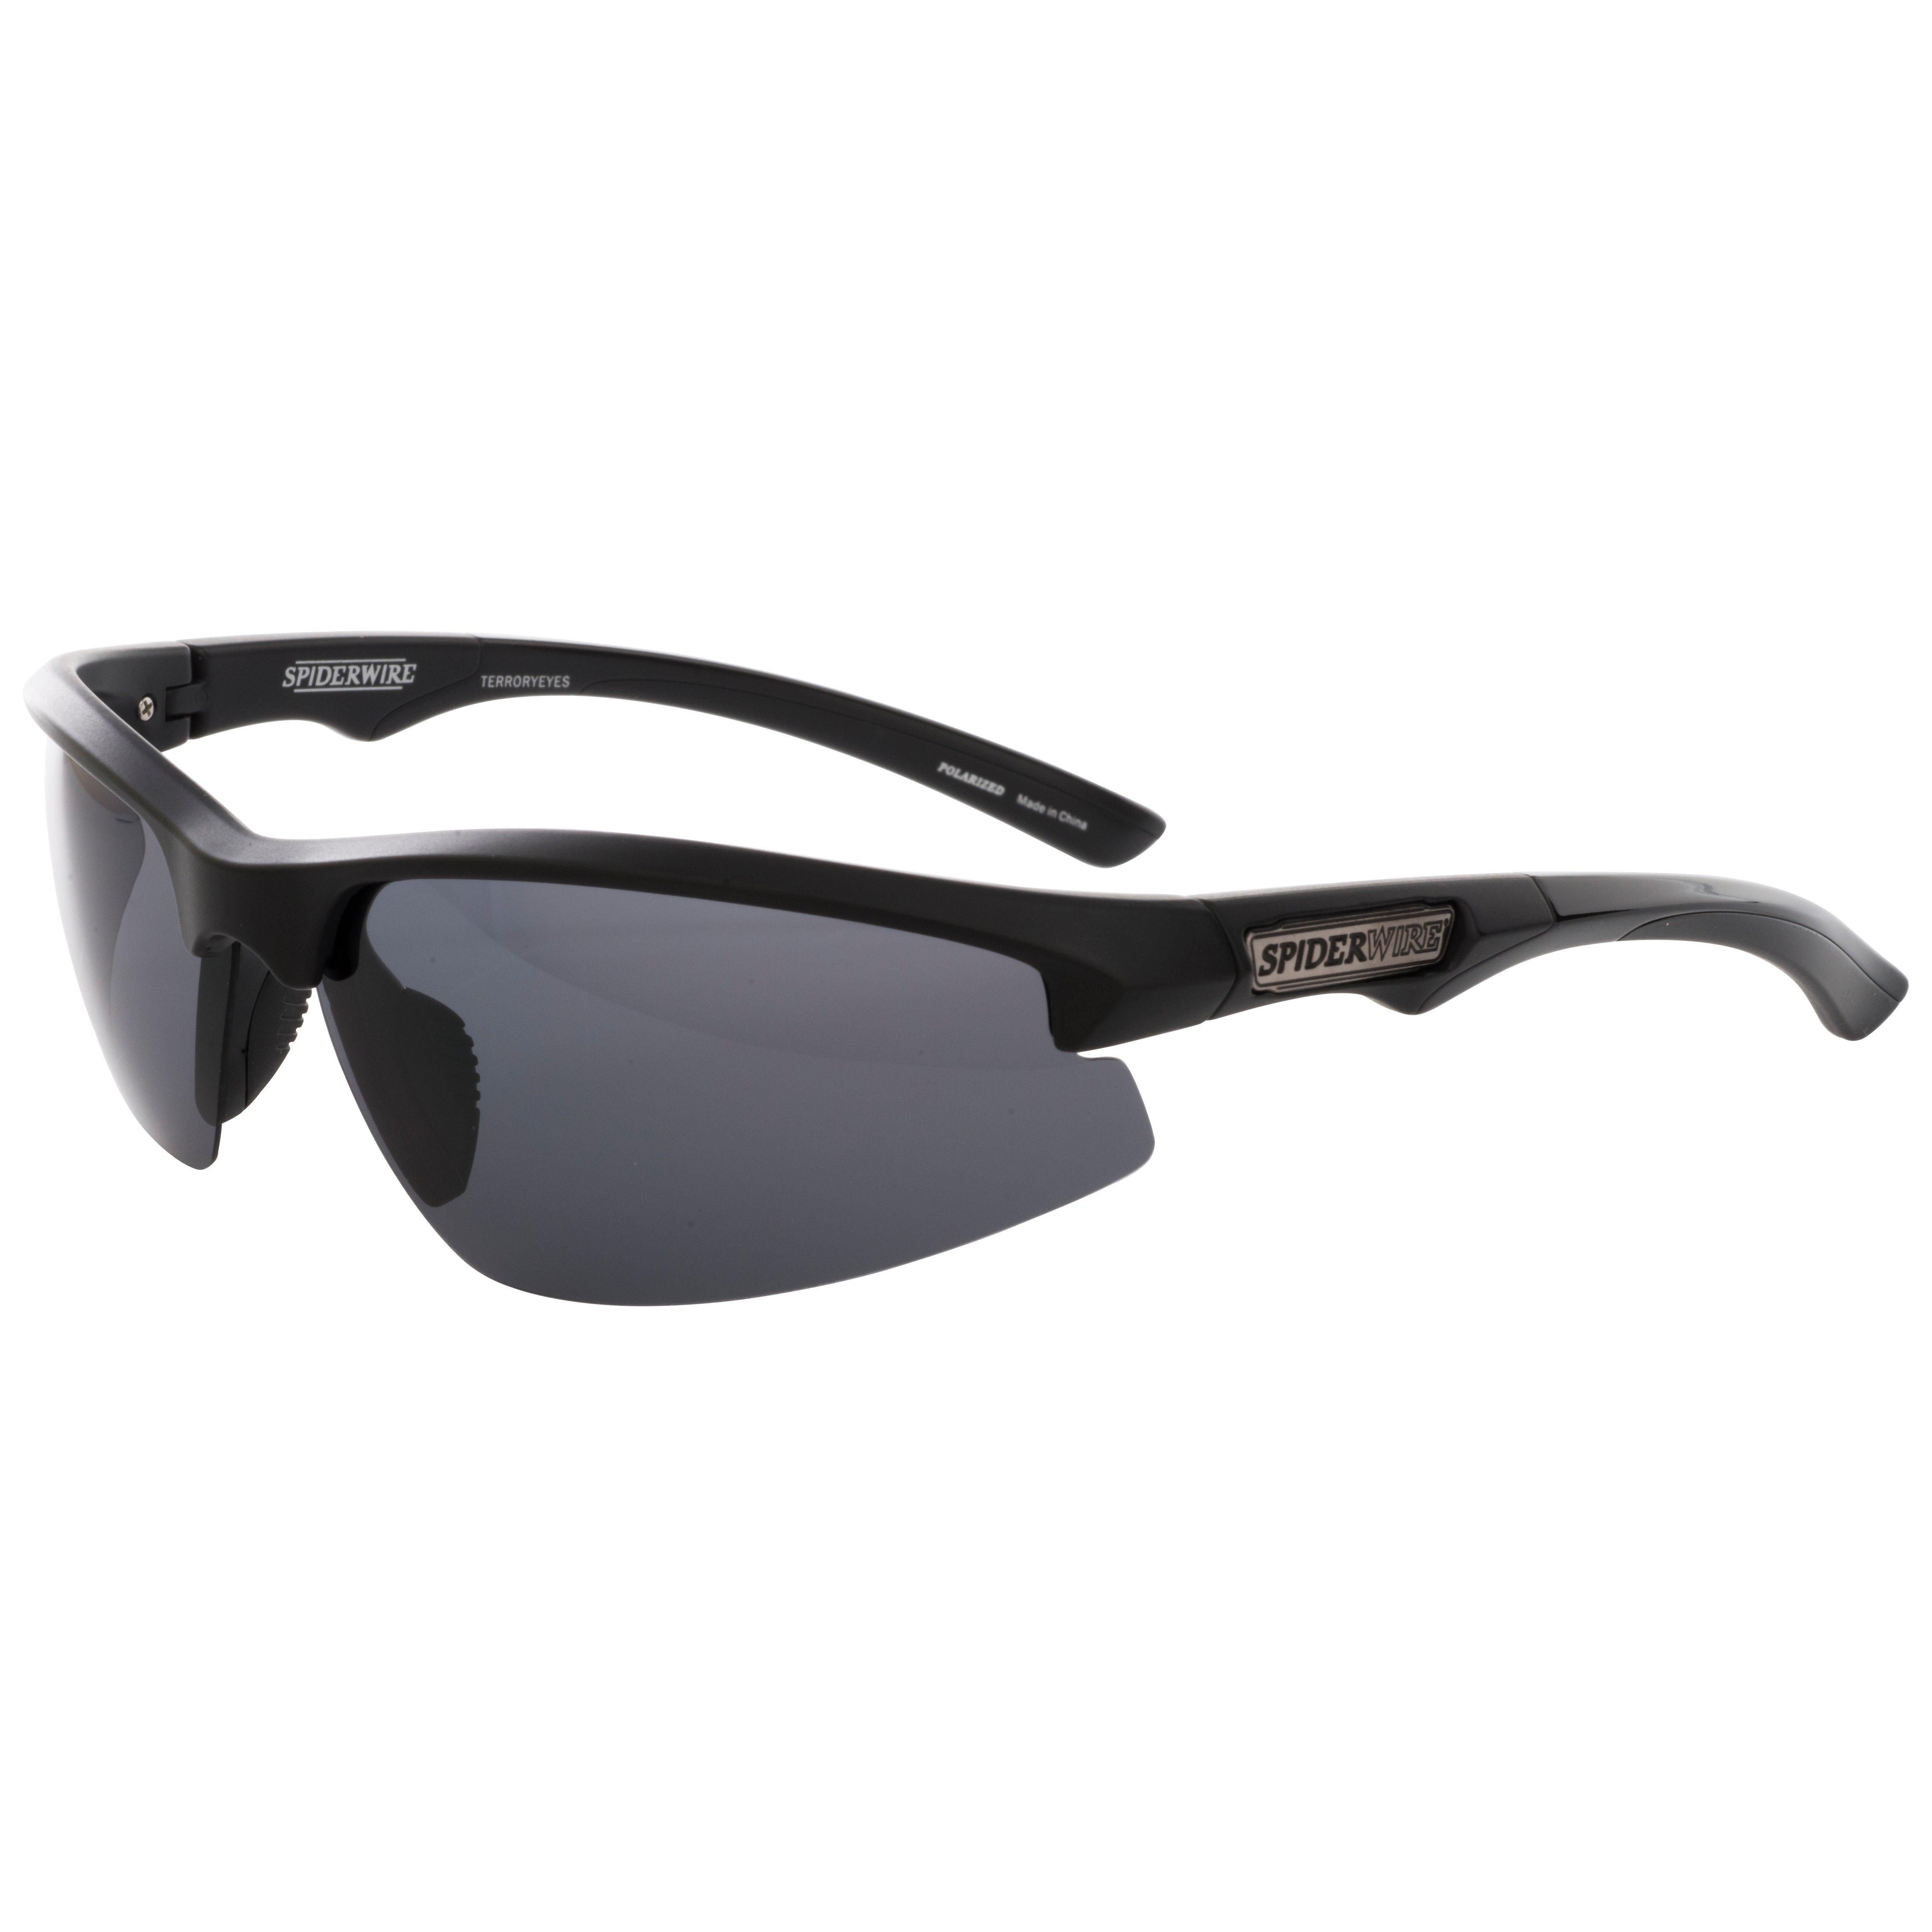 Spiderwire Classic SPW009 Polarized Fishing Sunglasses, Matte Black/Smoke